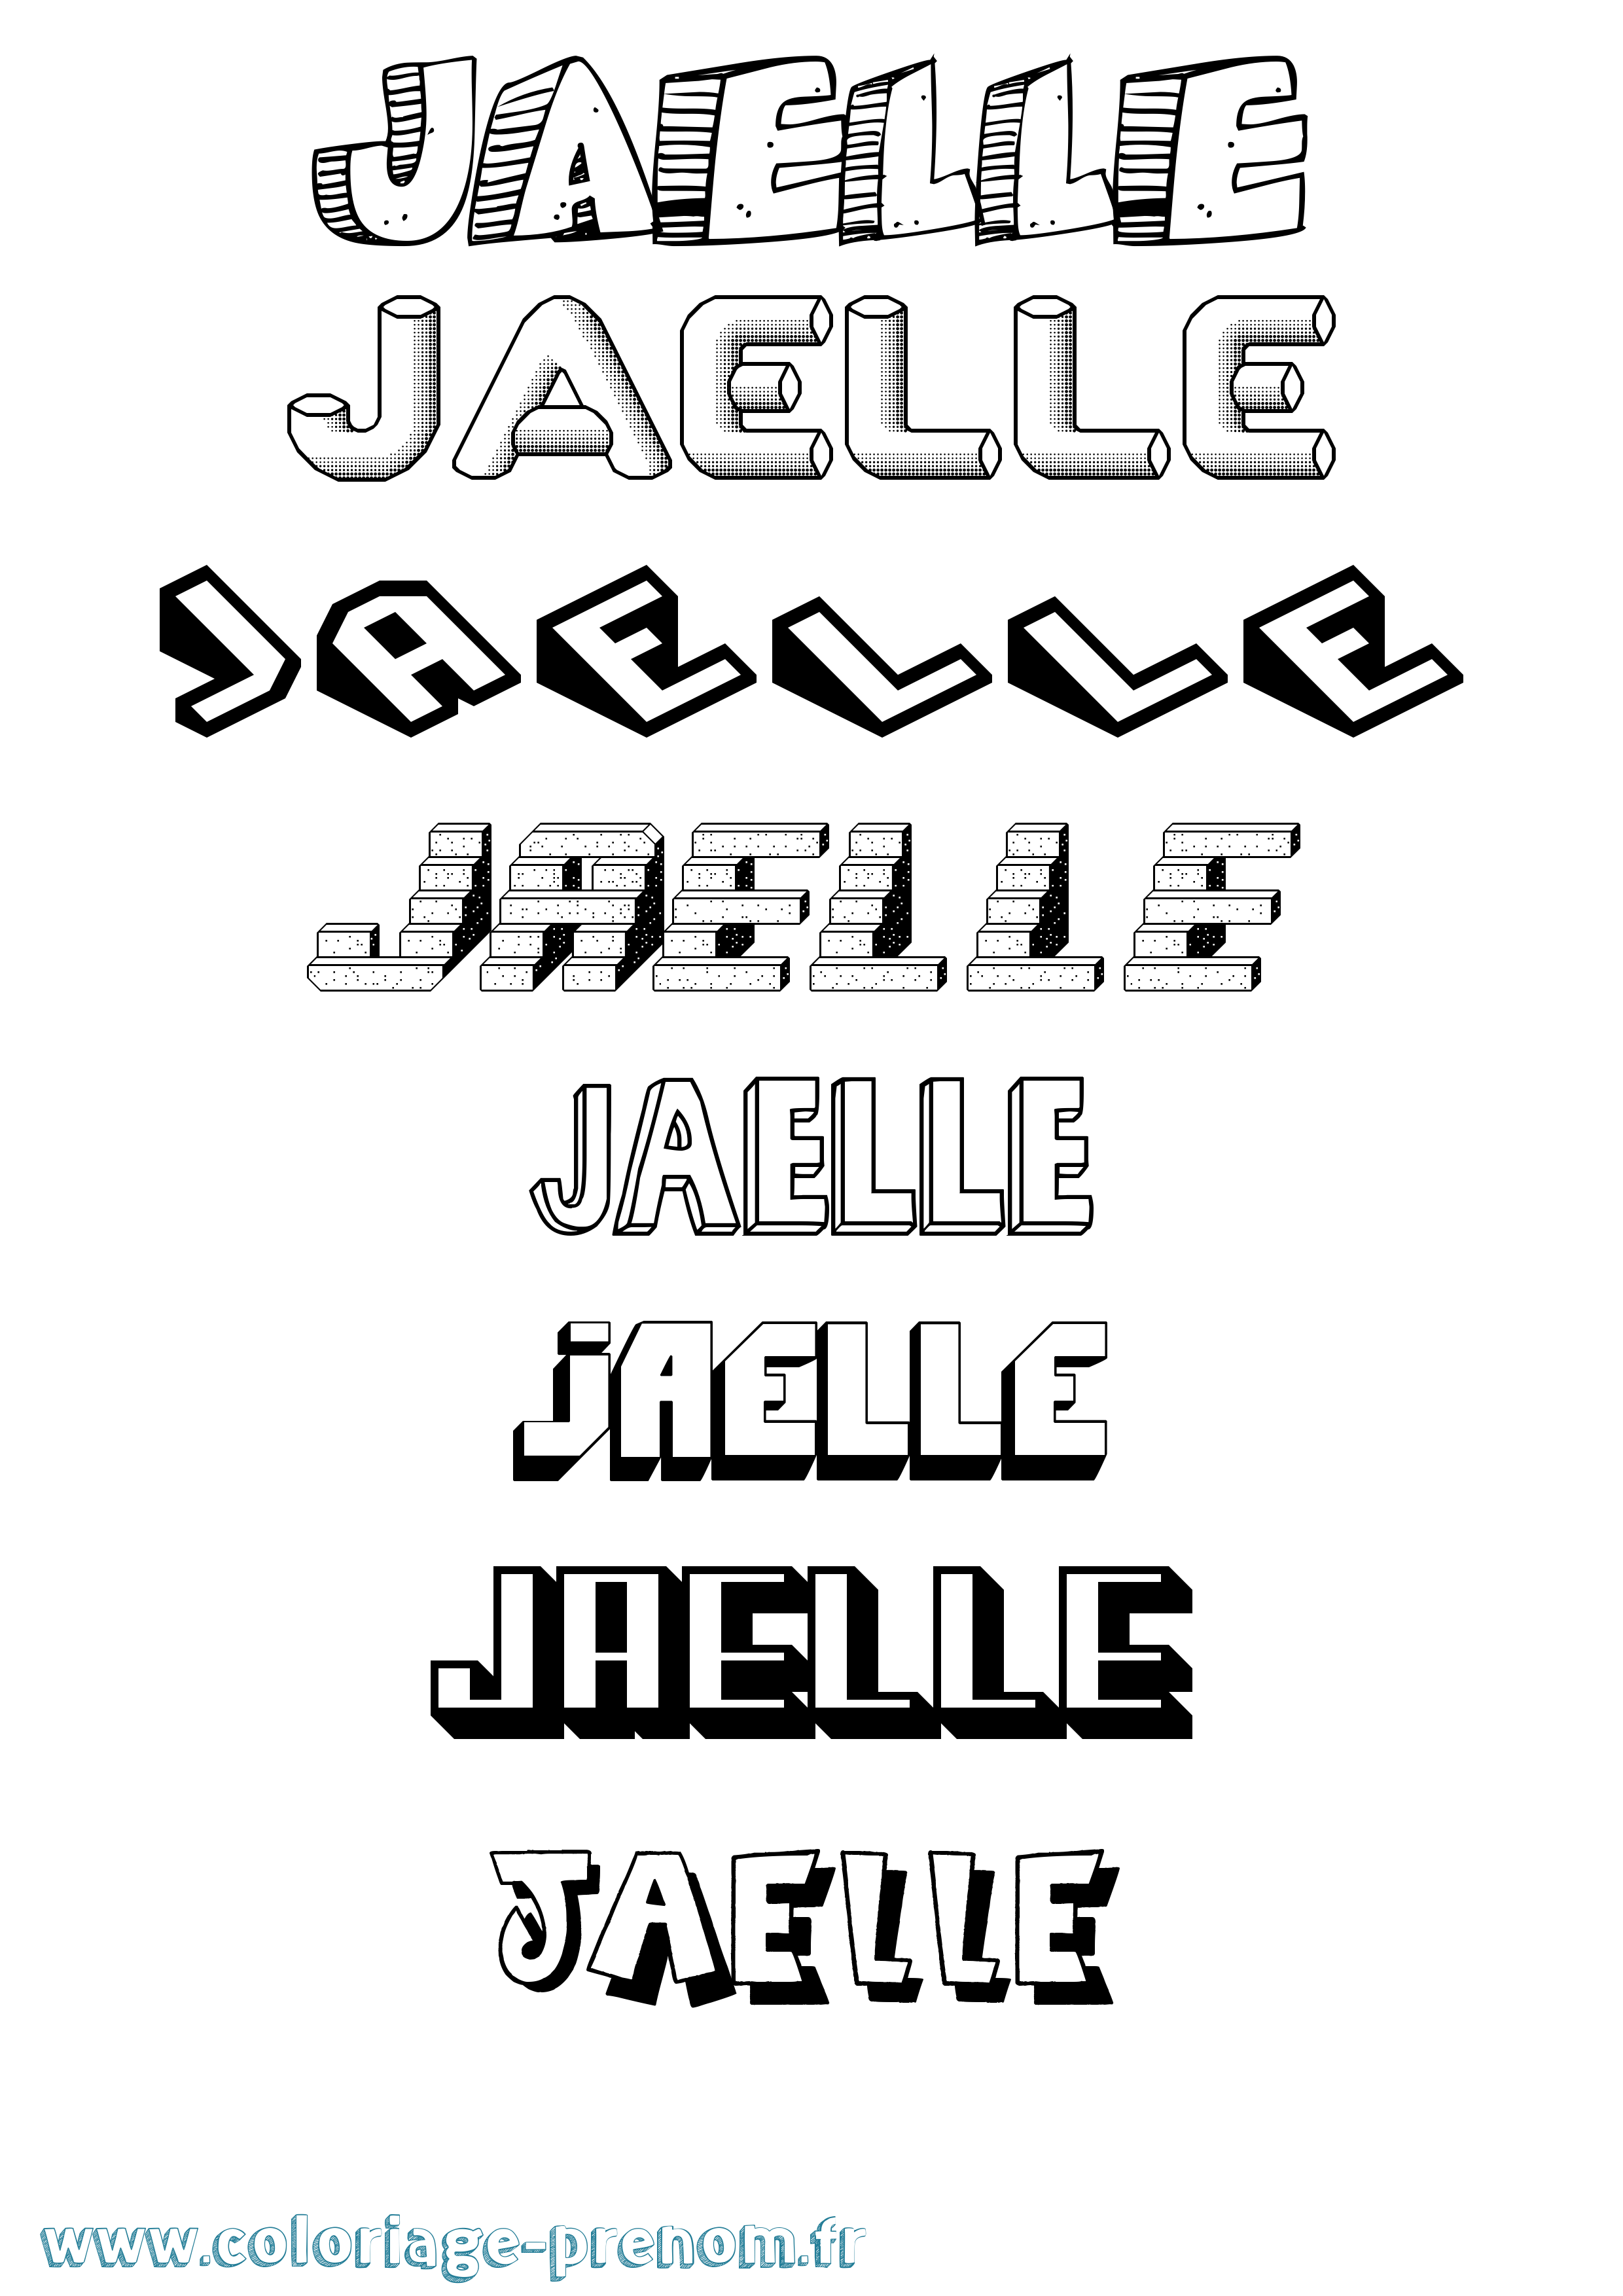 Coloriage prénom Jaelle Effet 3D